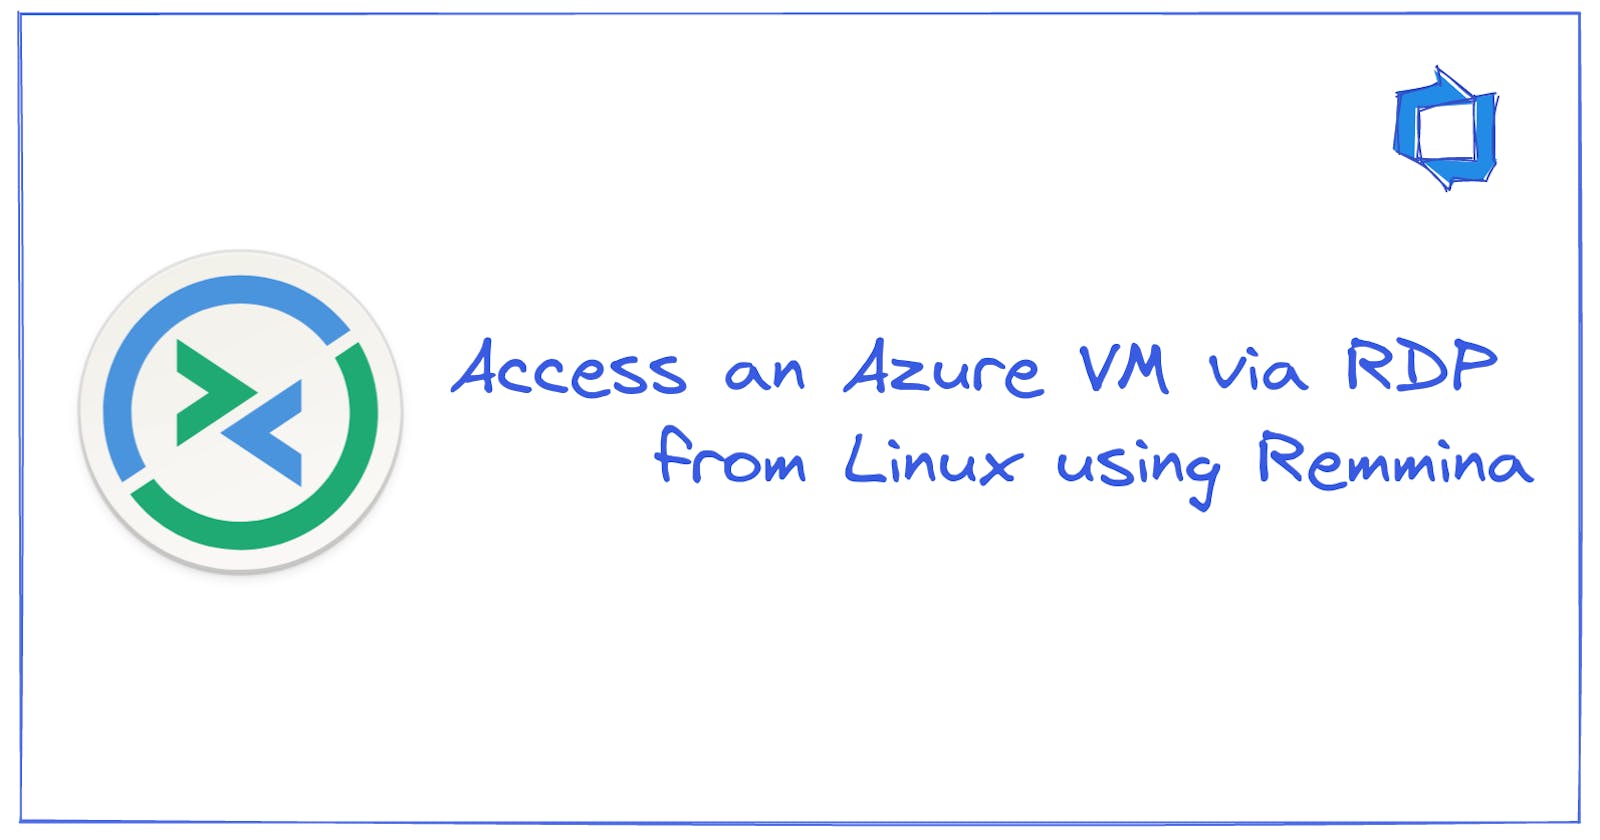 Access an Azure VM via RDP from Linux using Remmina